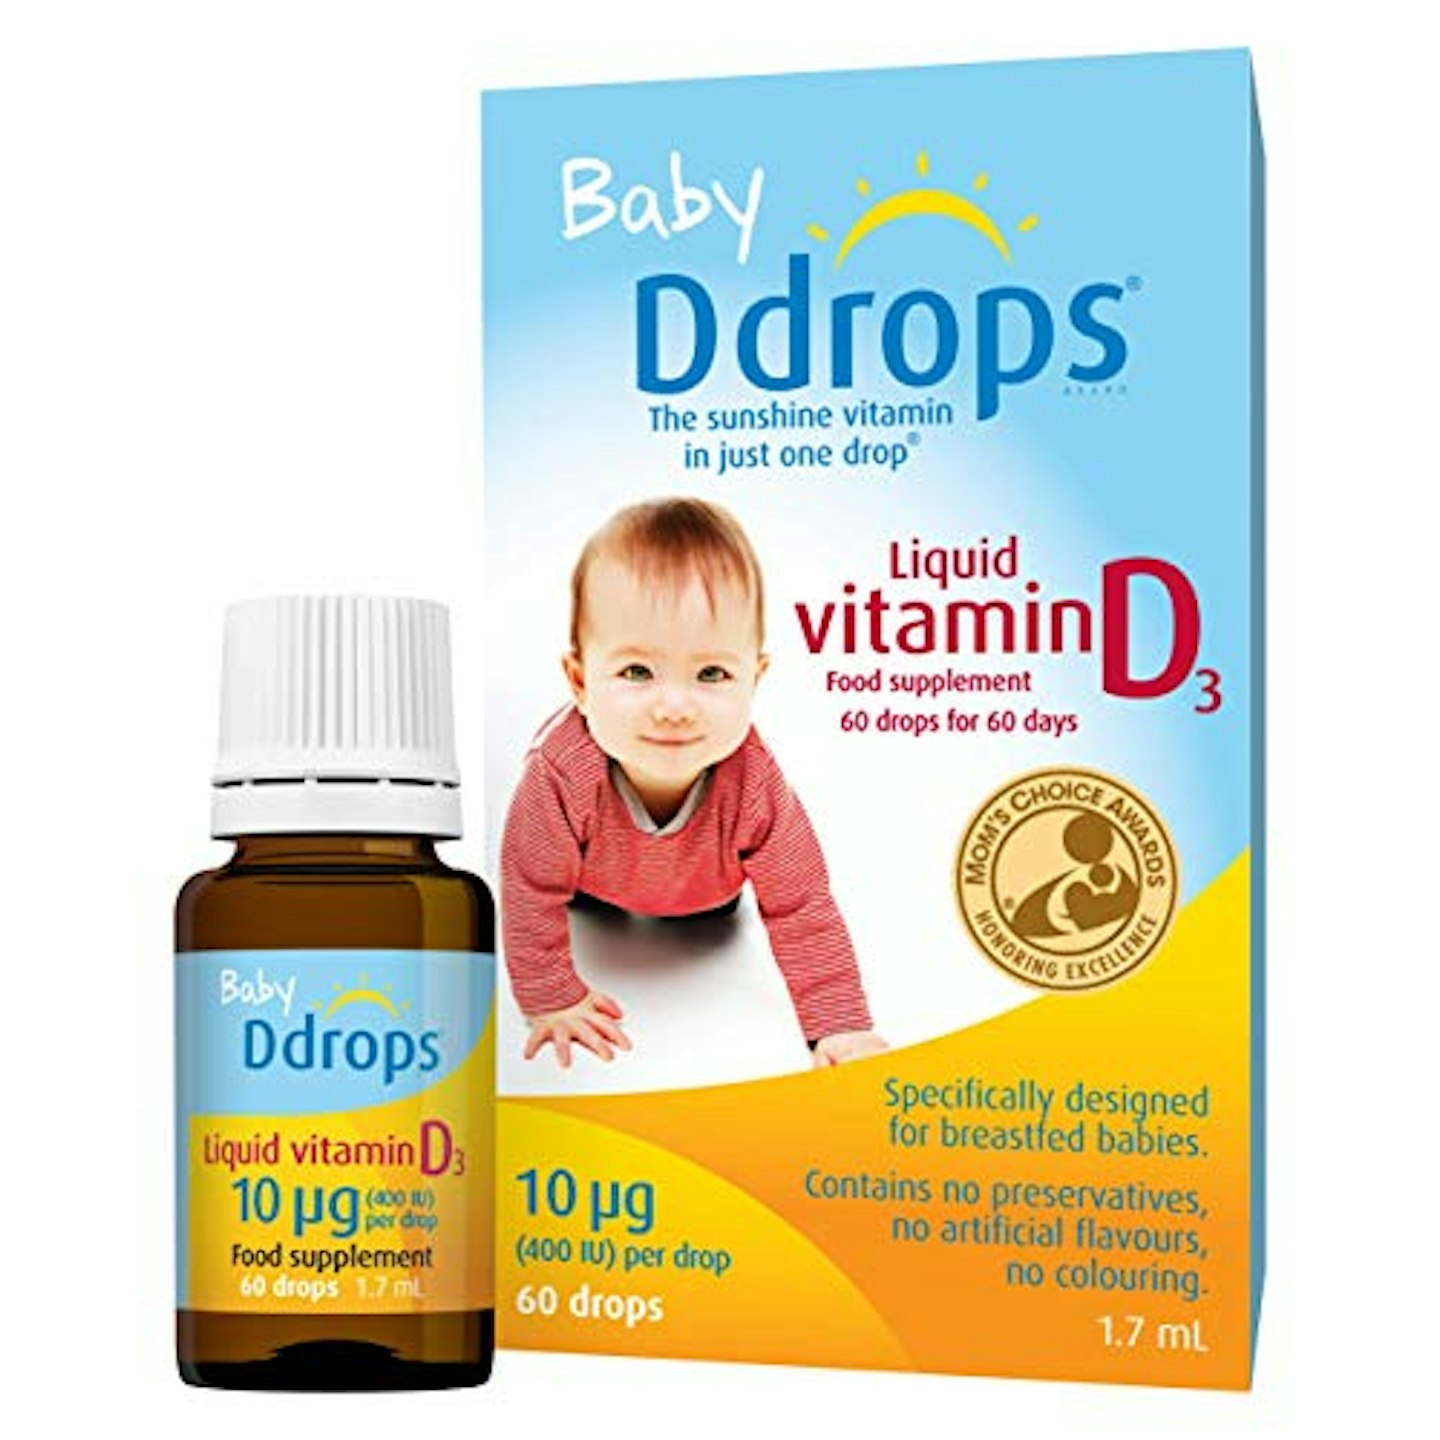 Baby Ddropsu00ae 10 u00b5g 60 Drops